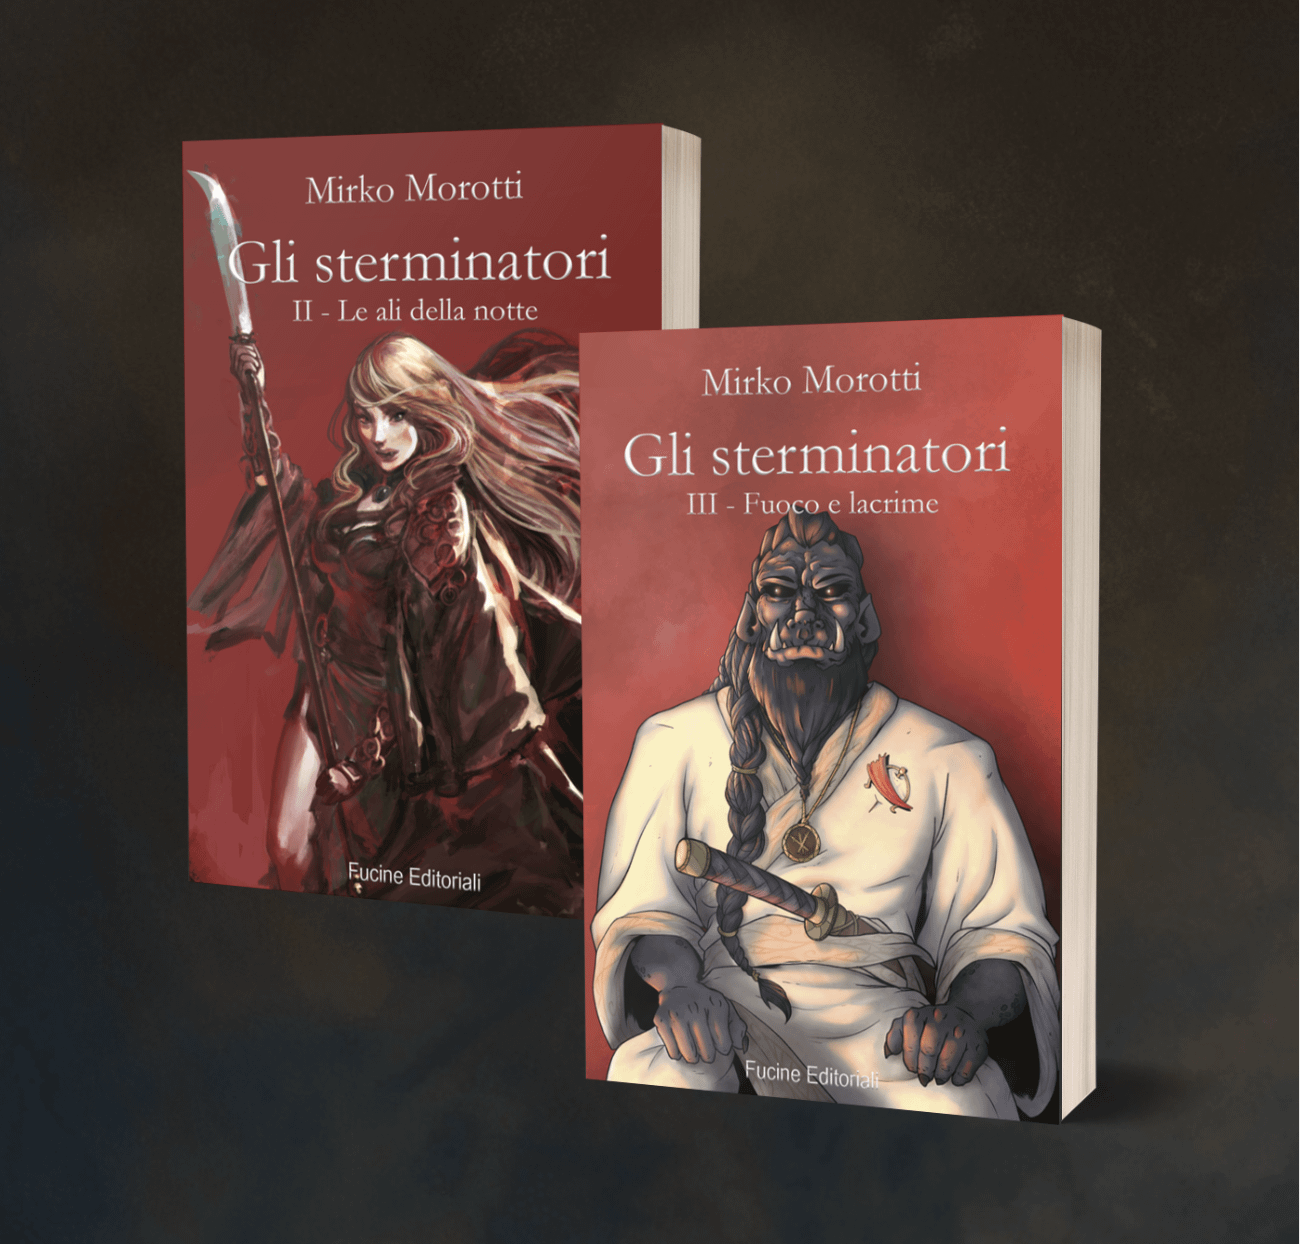 Box Blumetallo - Volume 2 e 3 della Saga de Gli sterminatori